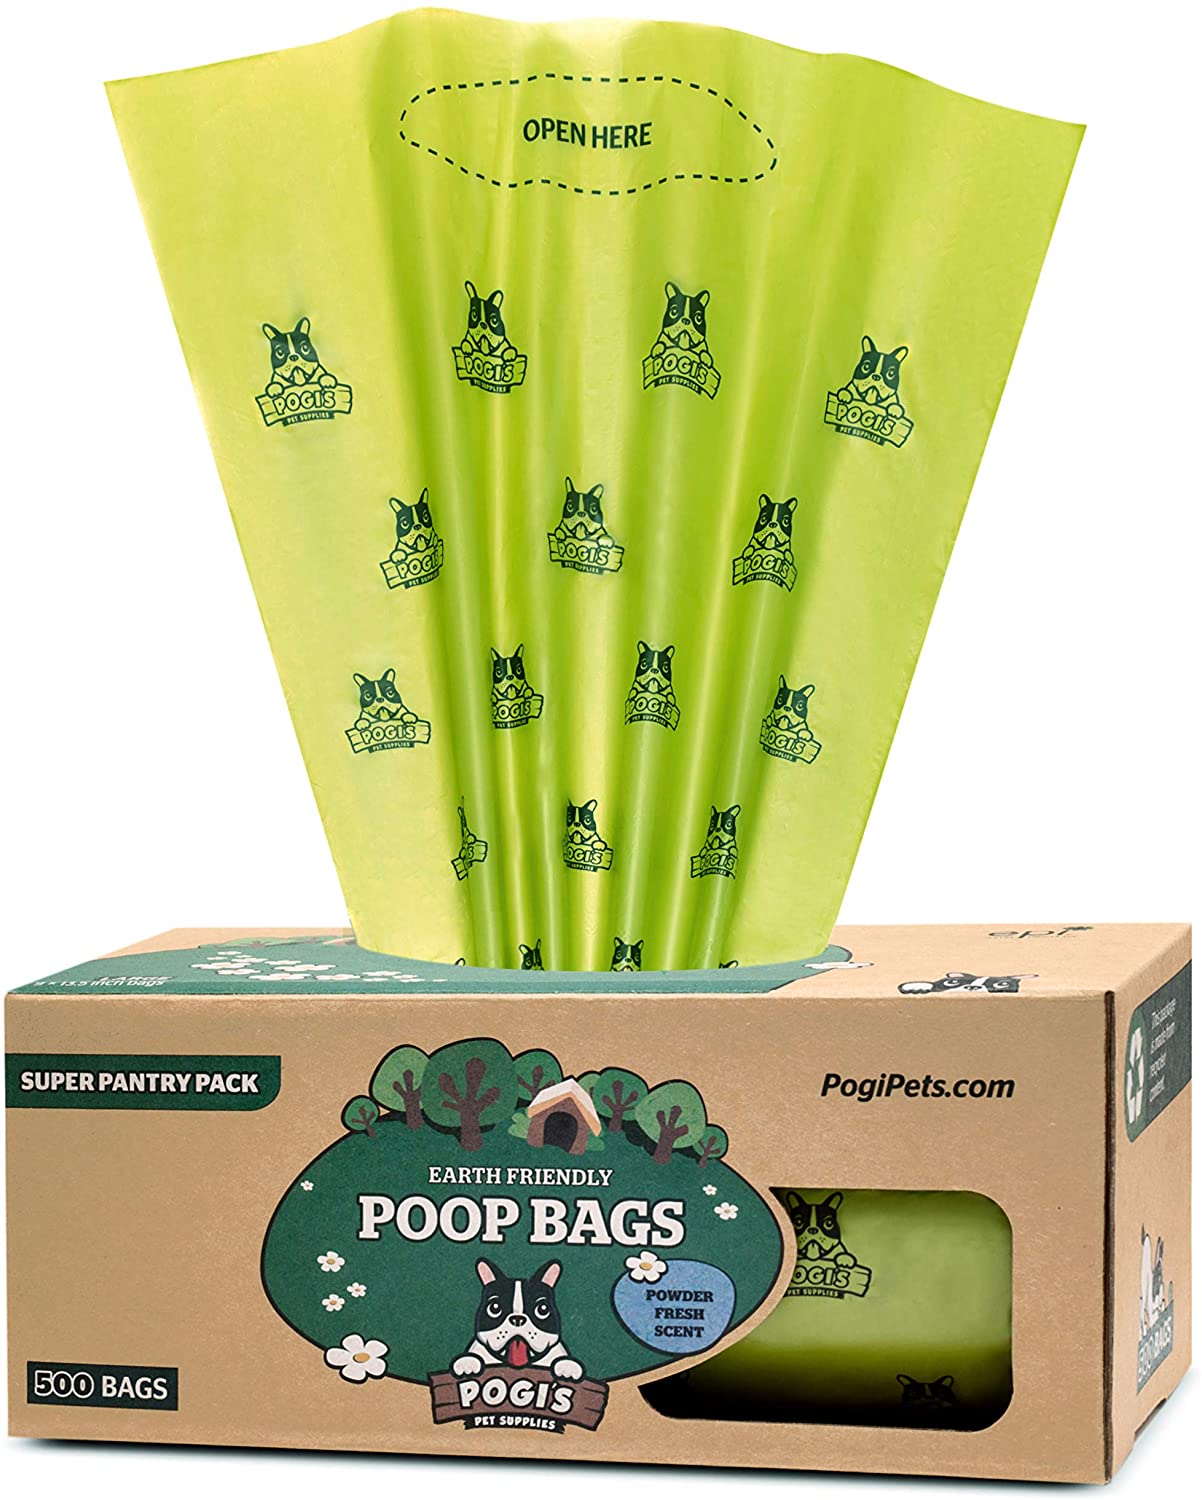  Pogi's Poop Bags - Bolsas para excremento de Perro - 500 Bolsas para despensas y Estaciones de residuos al Aire Libre - Grandes, Biodegradables, Perfumadas, Herméticas (Rollo Grande Único) 